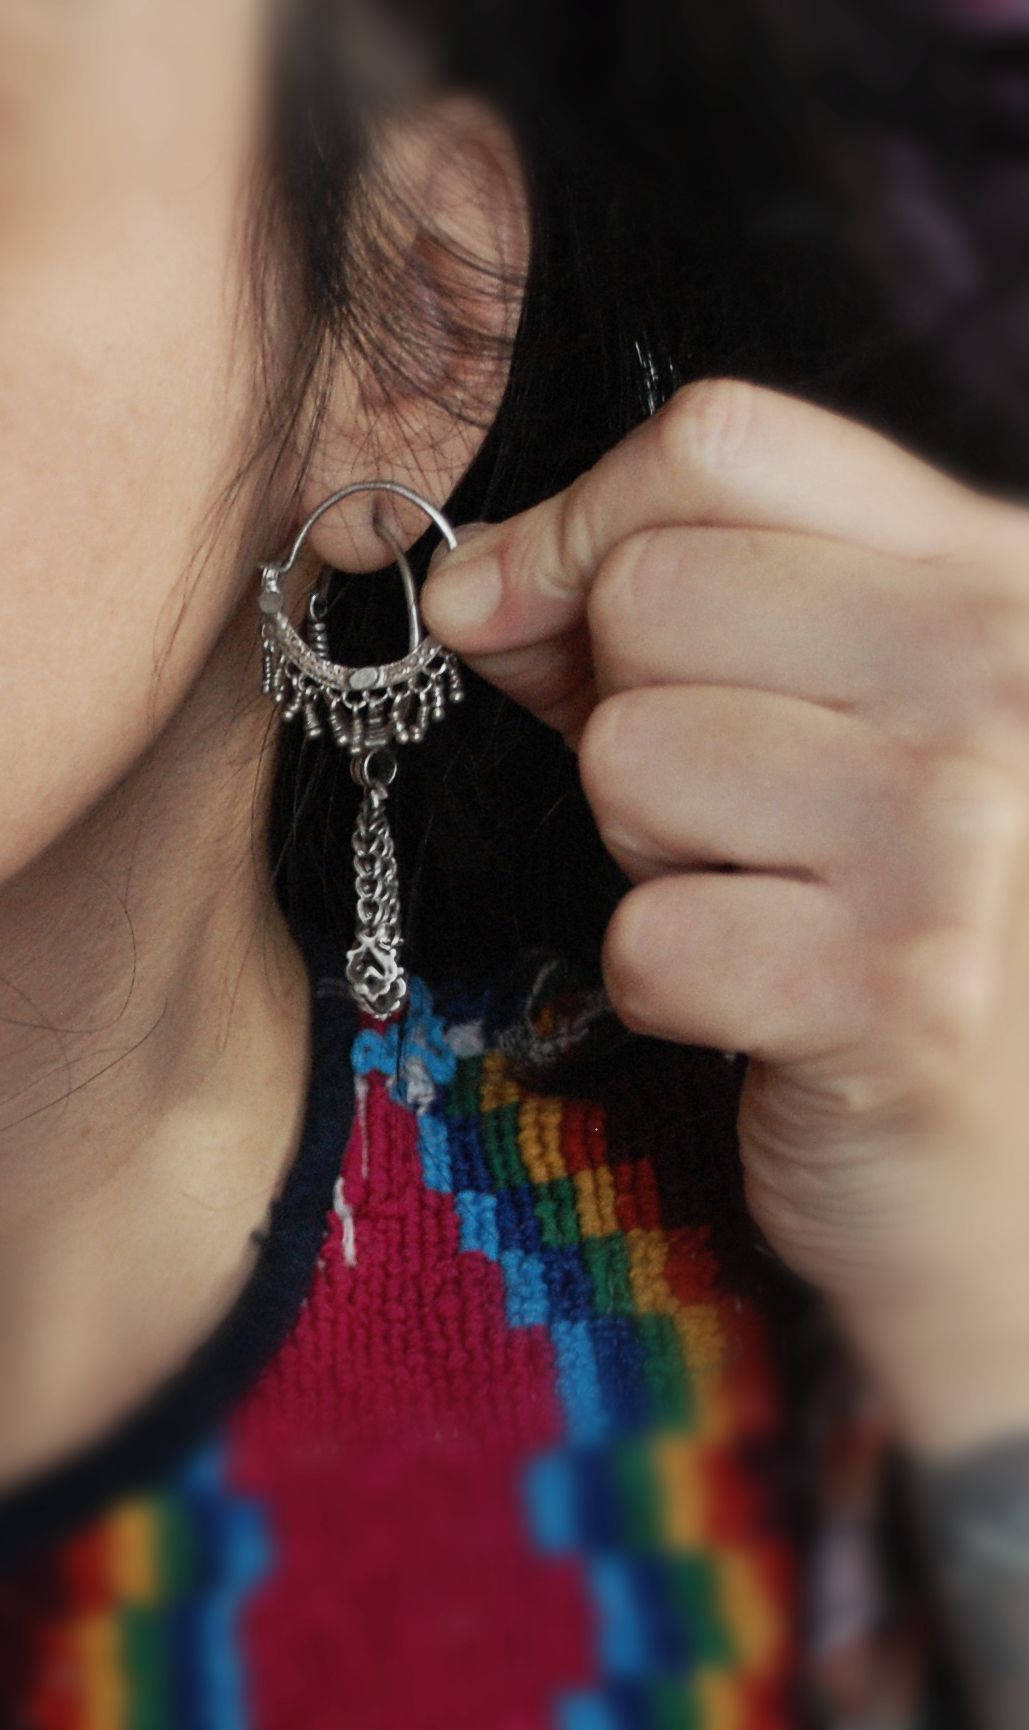 Small Afghani Hoop Earrings with Dangles - Afghani Earrings - Afghani Jewelry - Ethnic Hoop Earrings